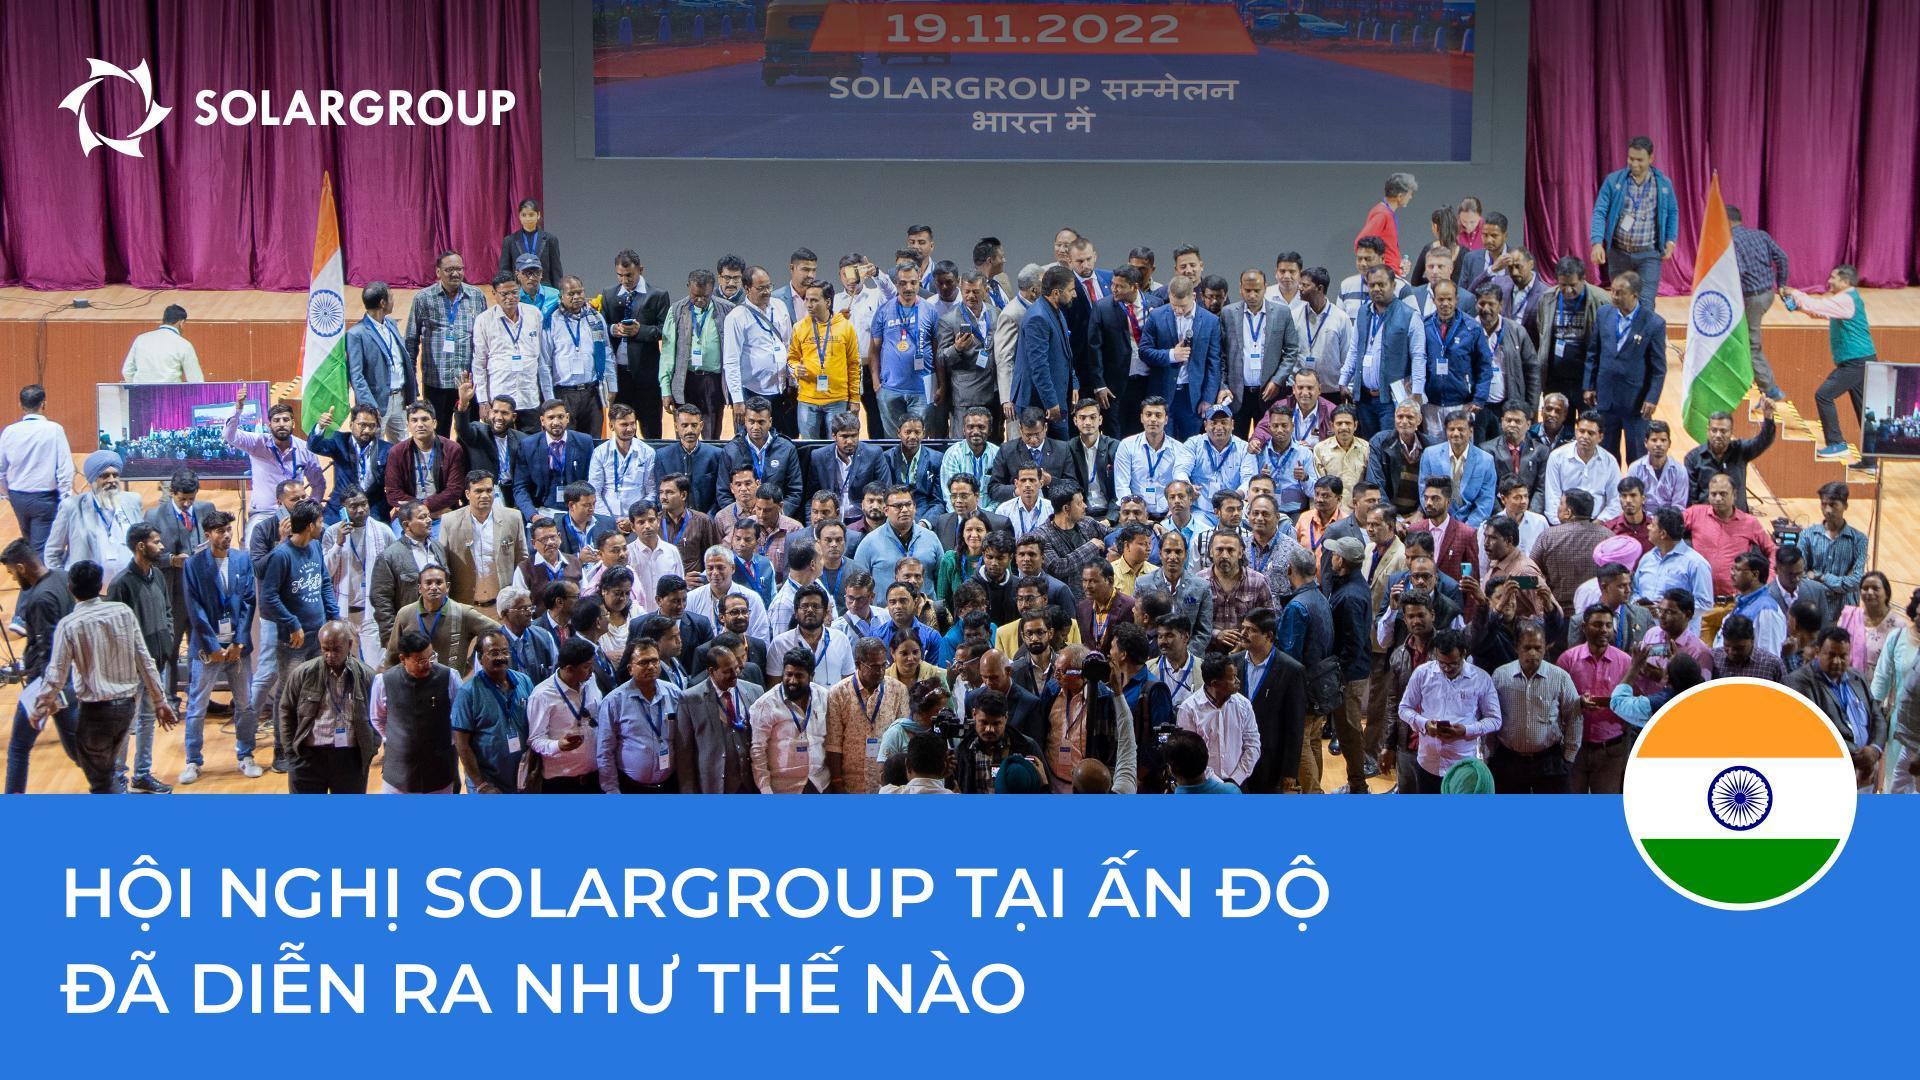 Hội nghị SOLARGROUP tại Ấn Độ: sự kiện này đáng nhớ vì điều gì